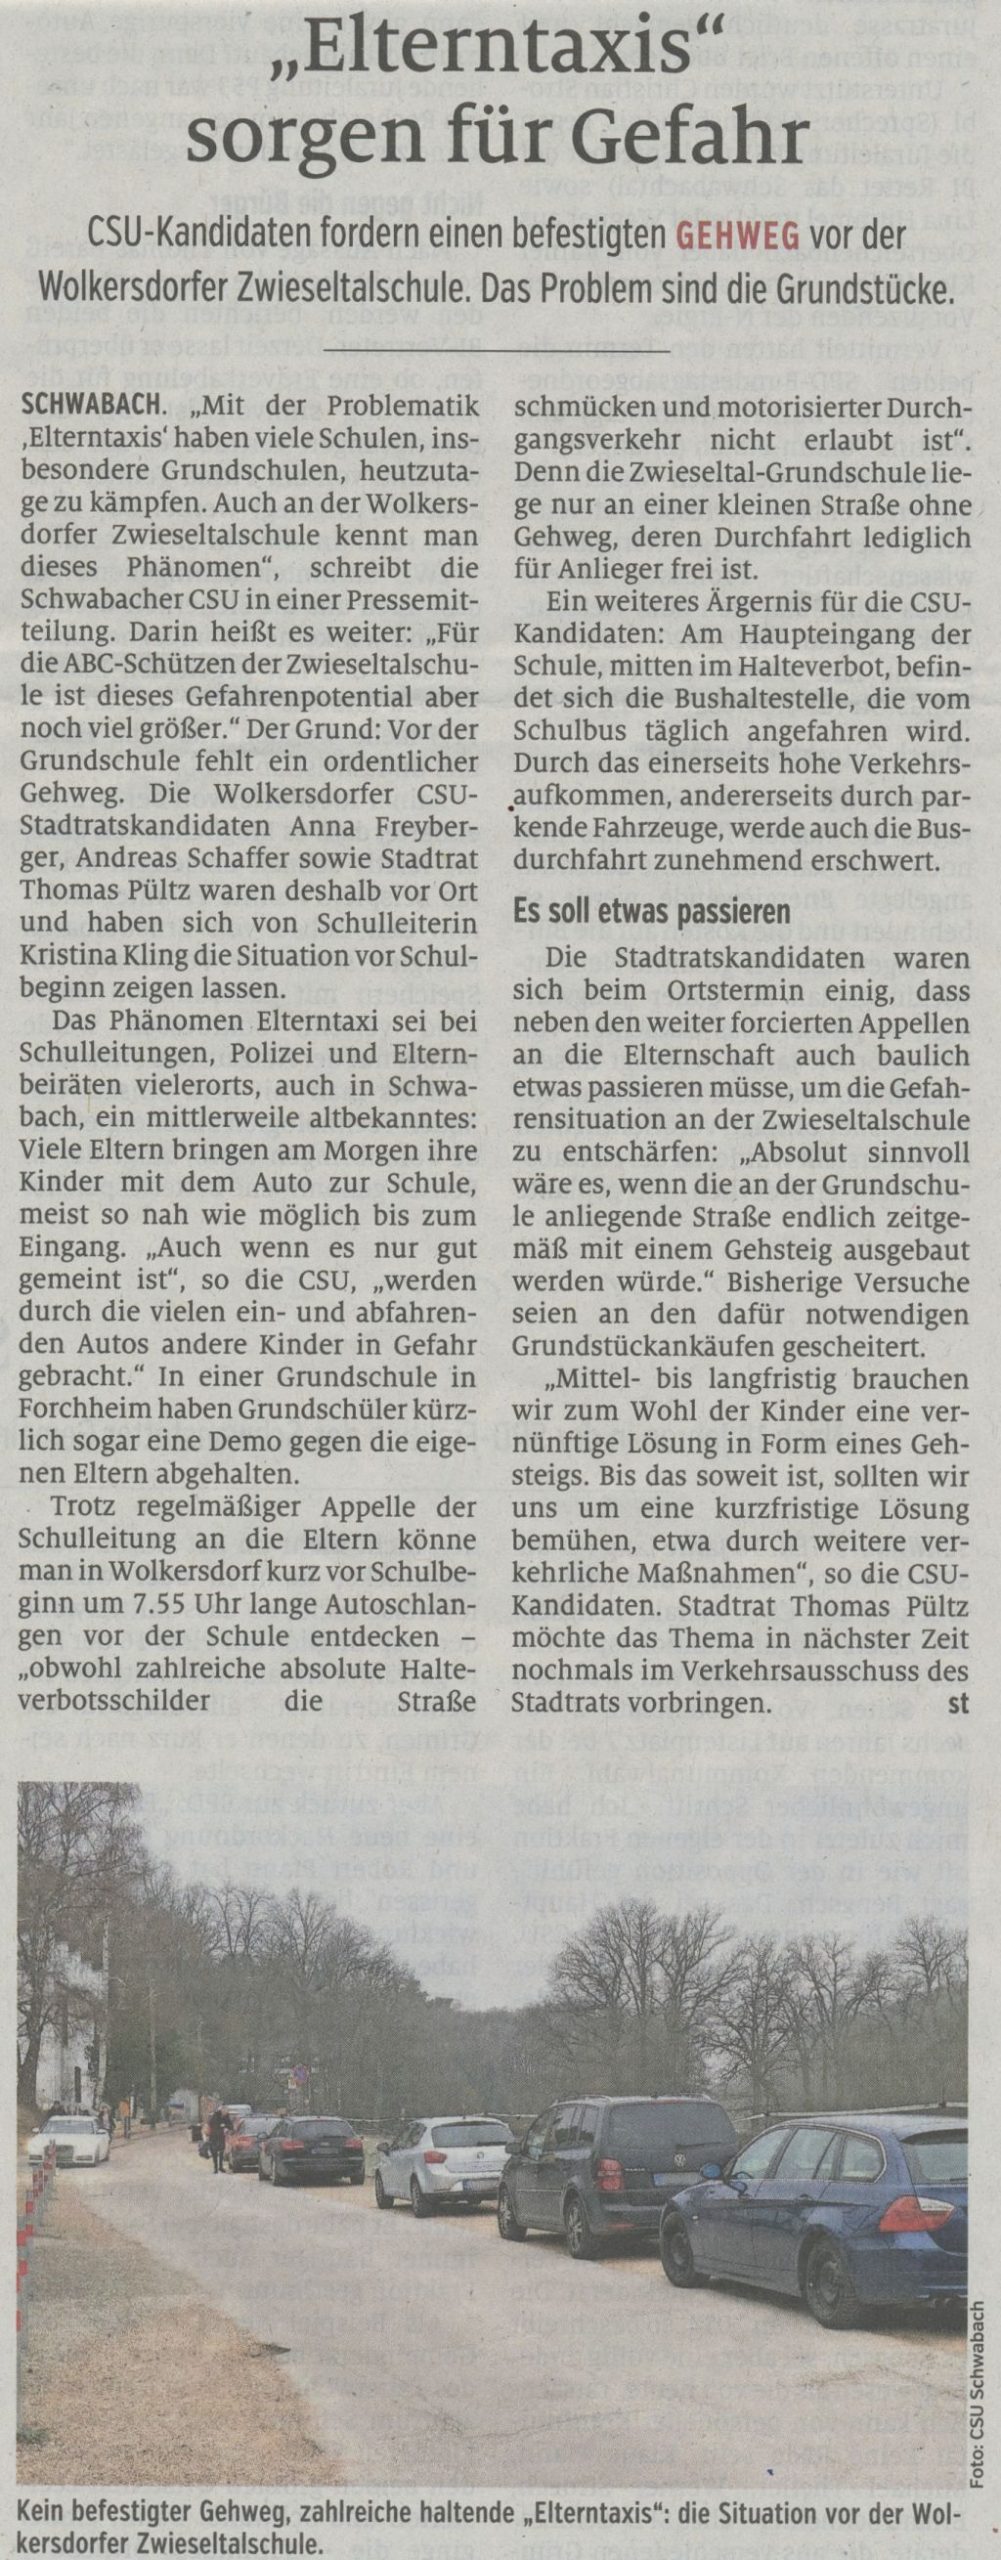 22.01.2020 - Elterntaxis sorgen für Gefahr - Schwabacher Tagblatt